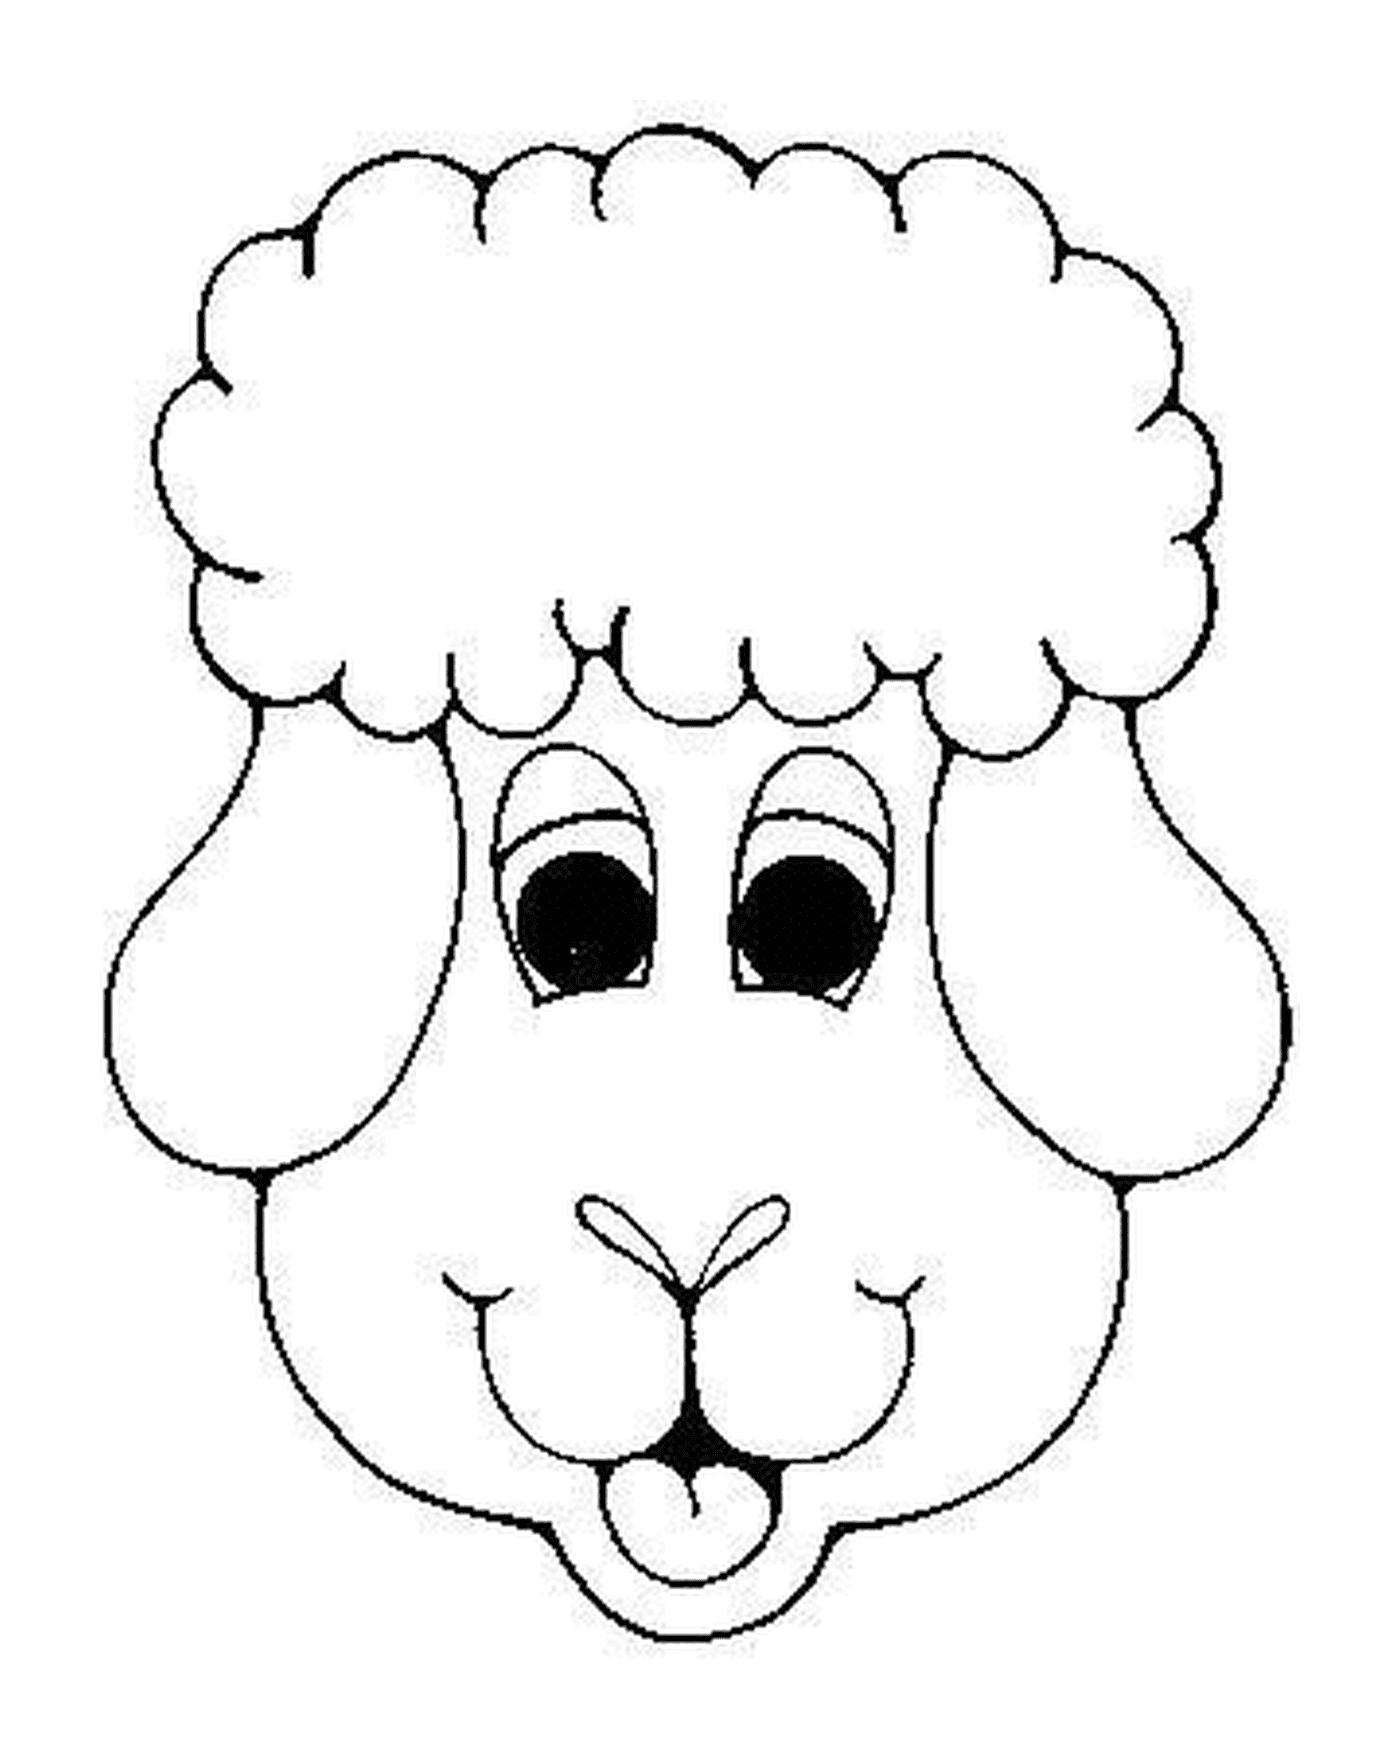  Nice sheep face 